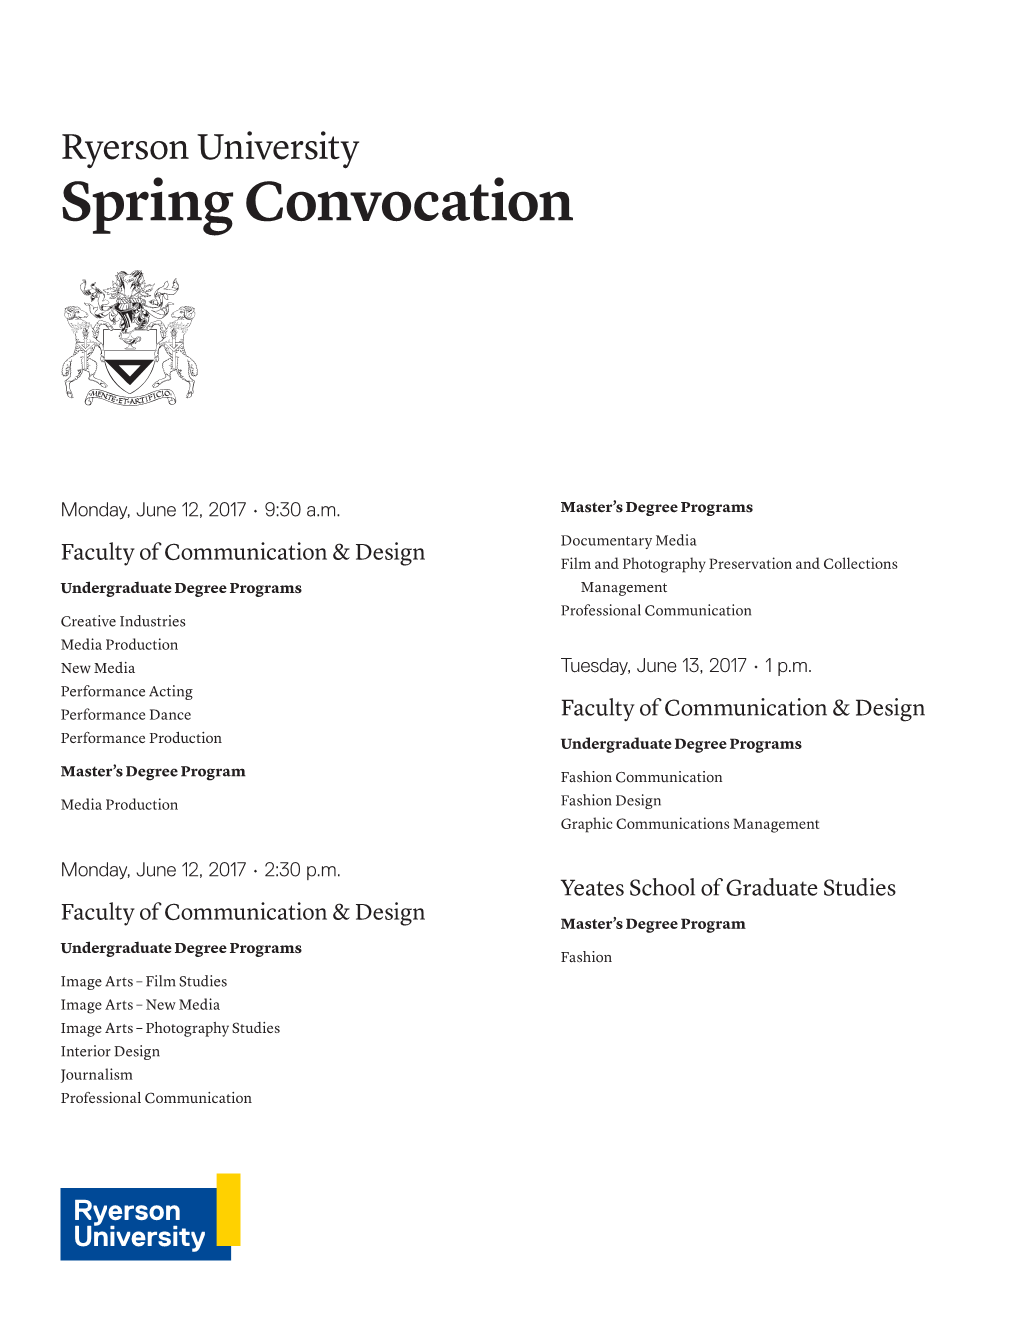 Ryerson University Spring Convocation